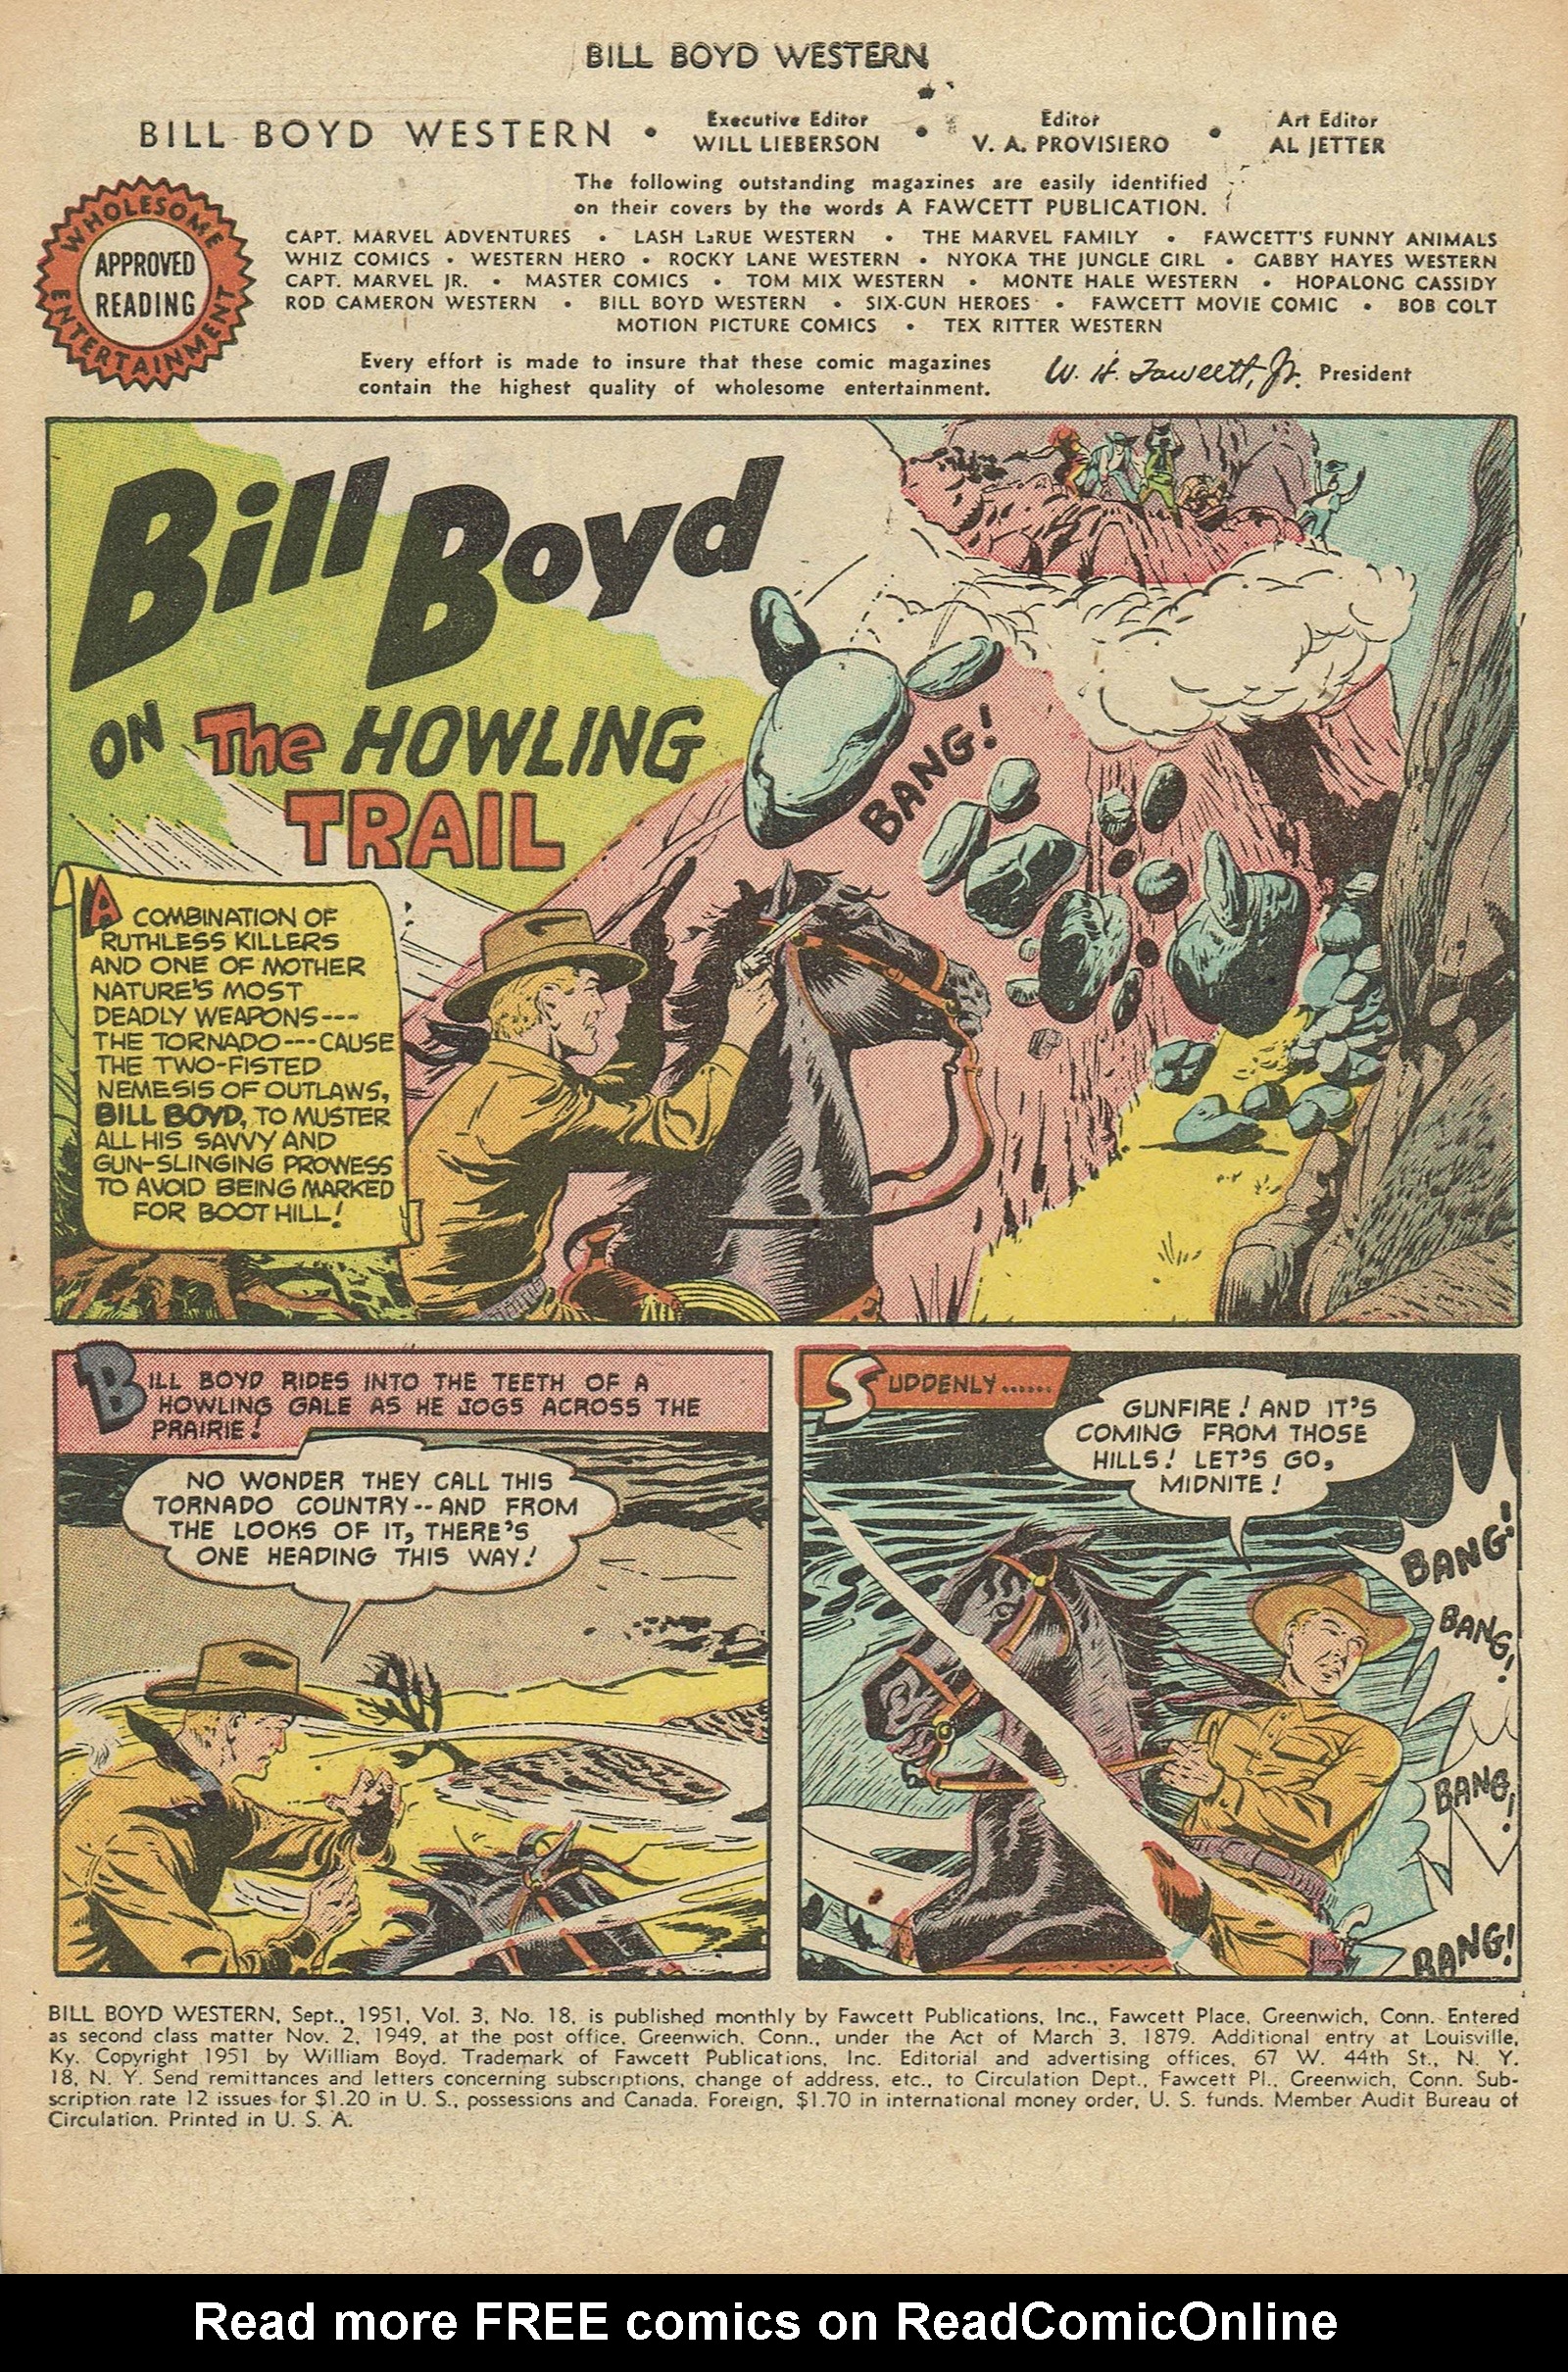 Read online Bill Boyd Western comic -  Issue #18 - 3